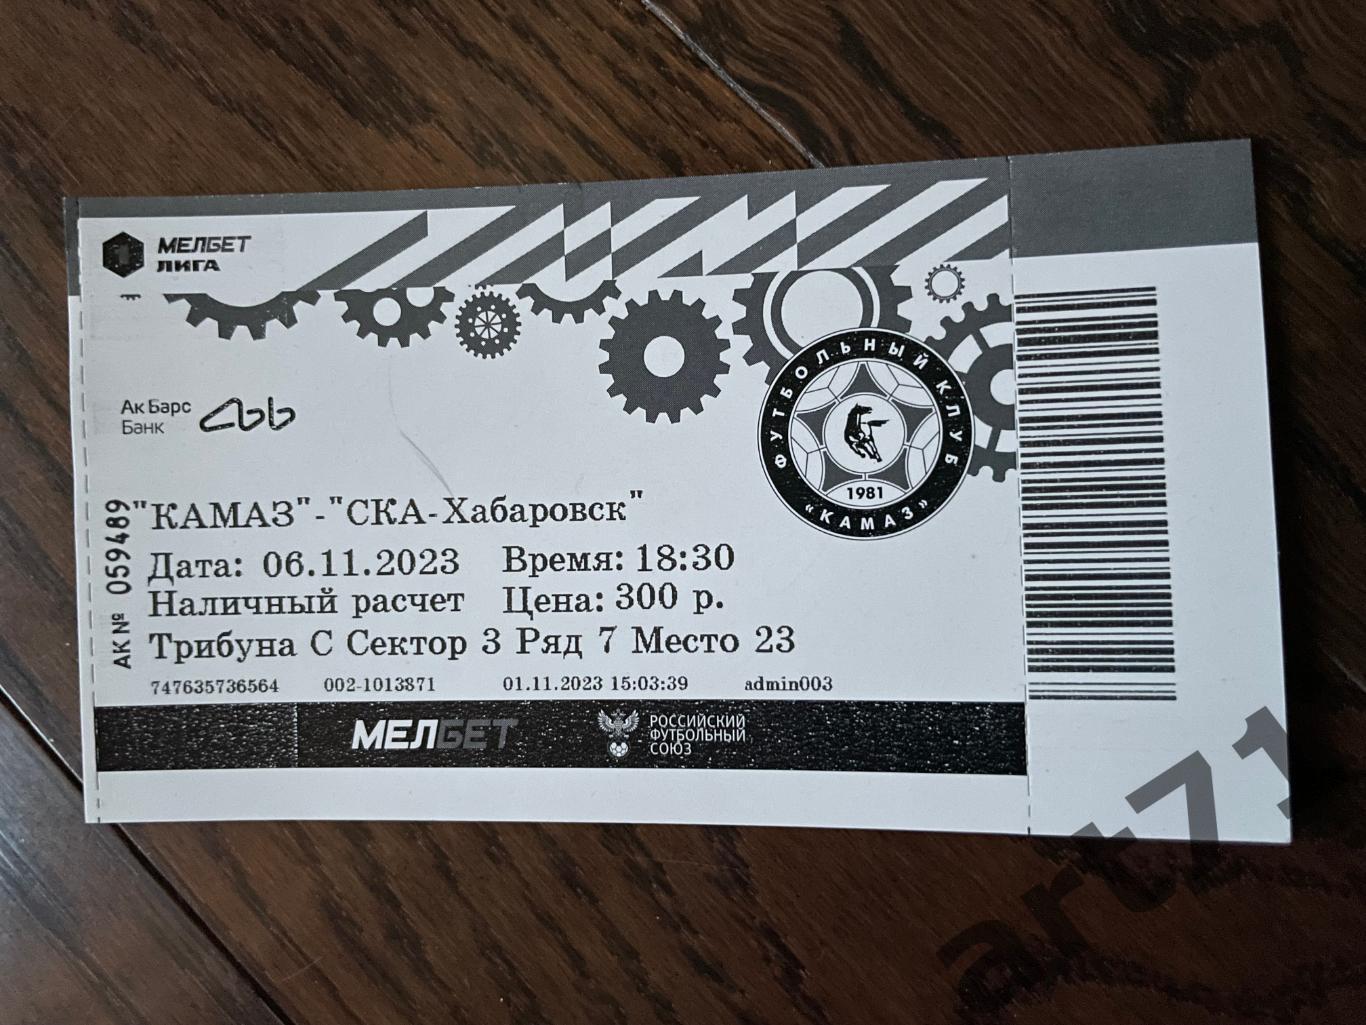 КАМАЗ (Набережные Челны) - СКА (Хабаровск) 2023 билет